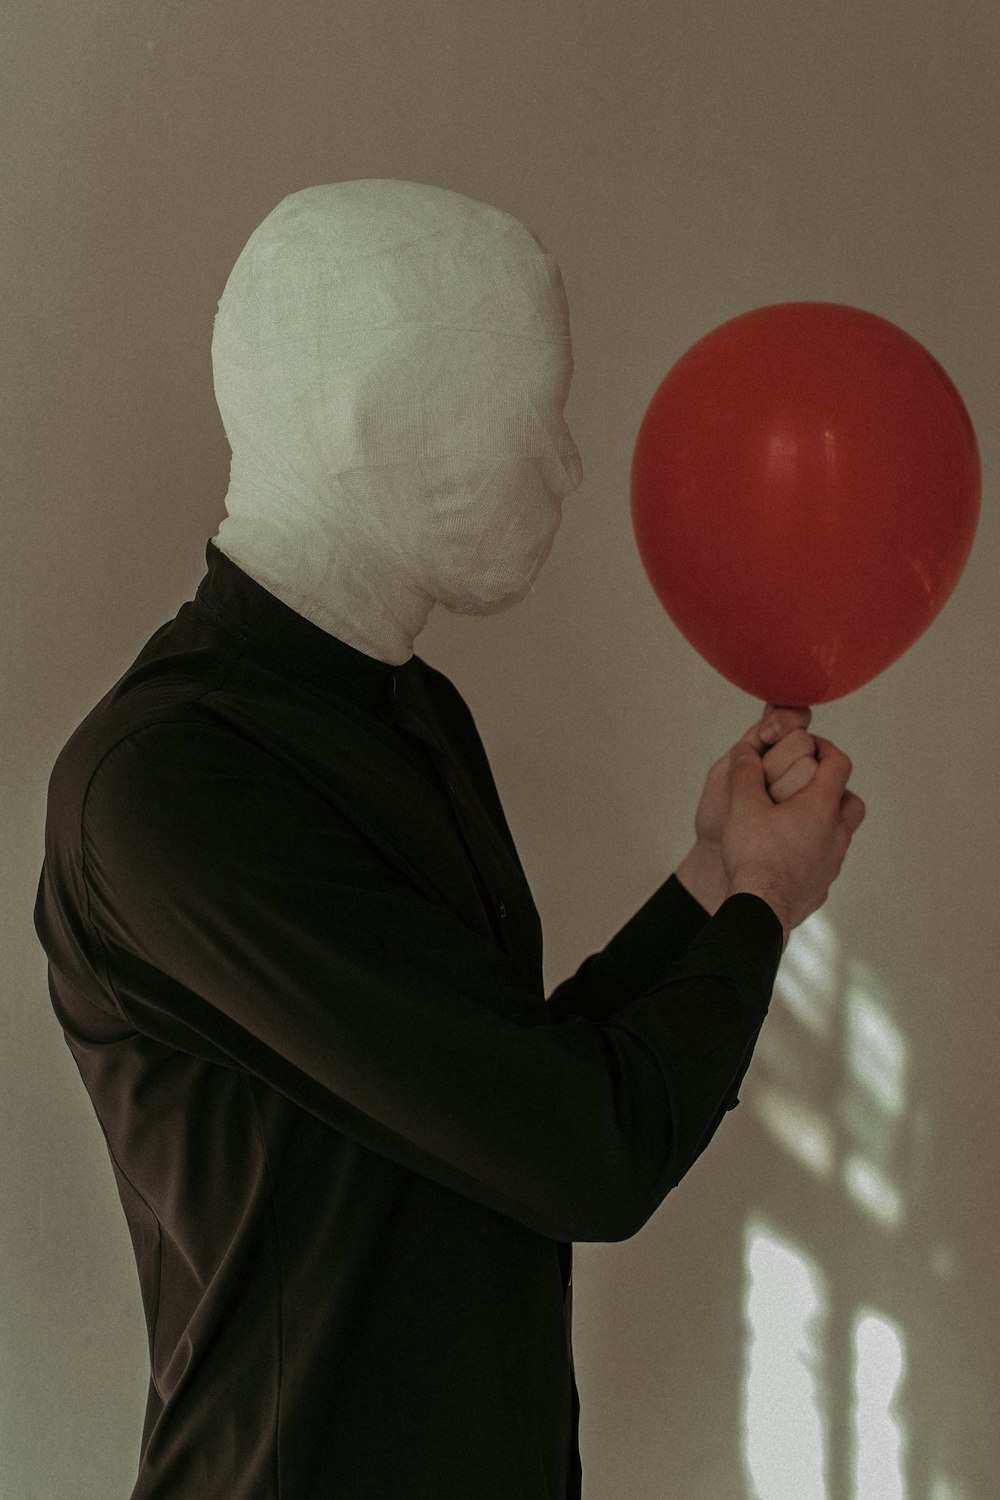 uma pessoa em uma máscara branca segurando um balão vermelho